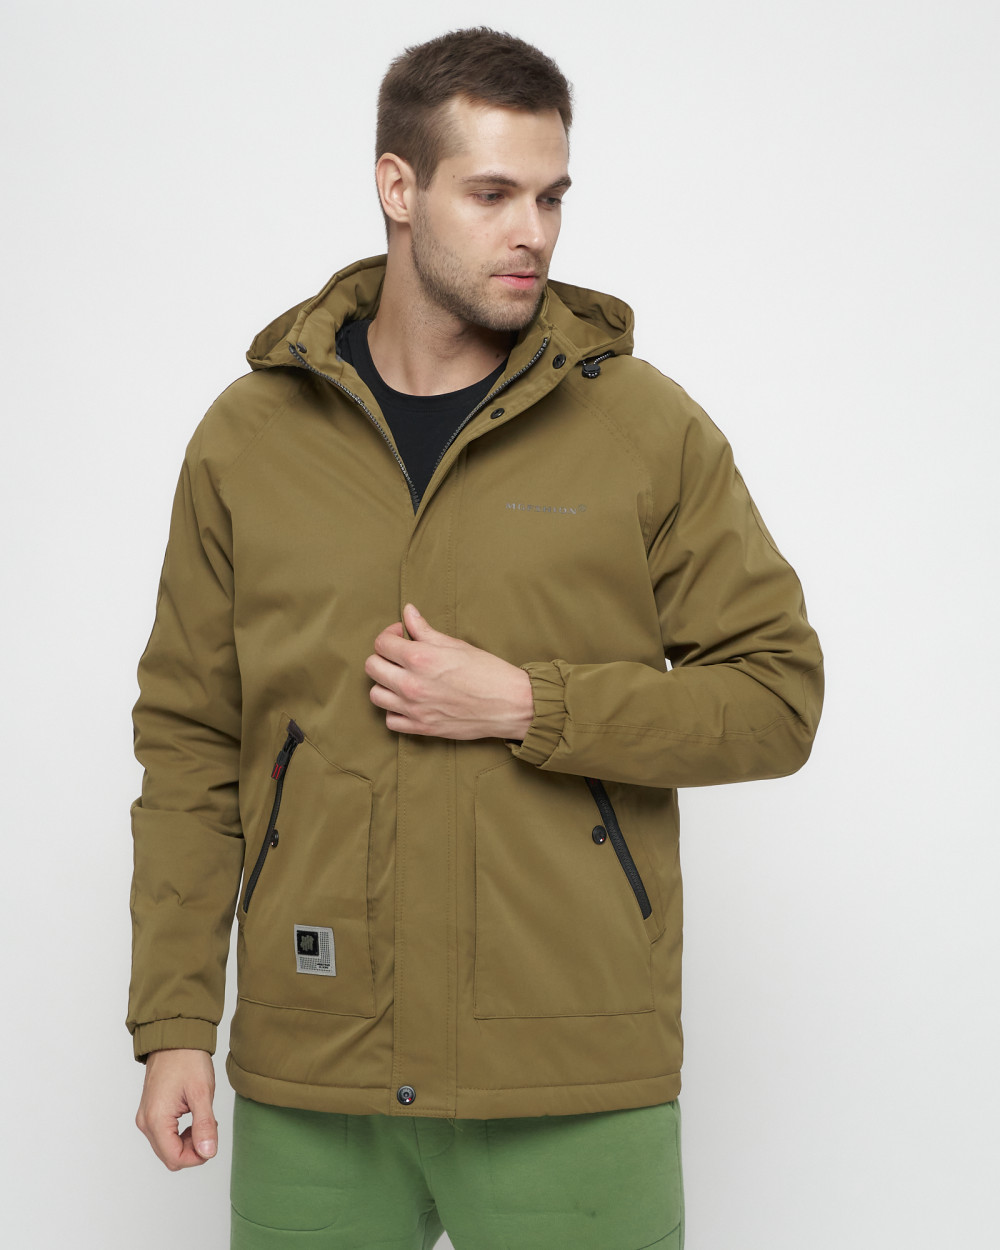 Купить куртку мужскую спортивную весеннюю оптом от производителя недорого в Москве 8598B 1